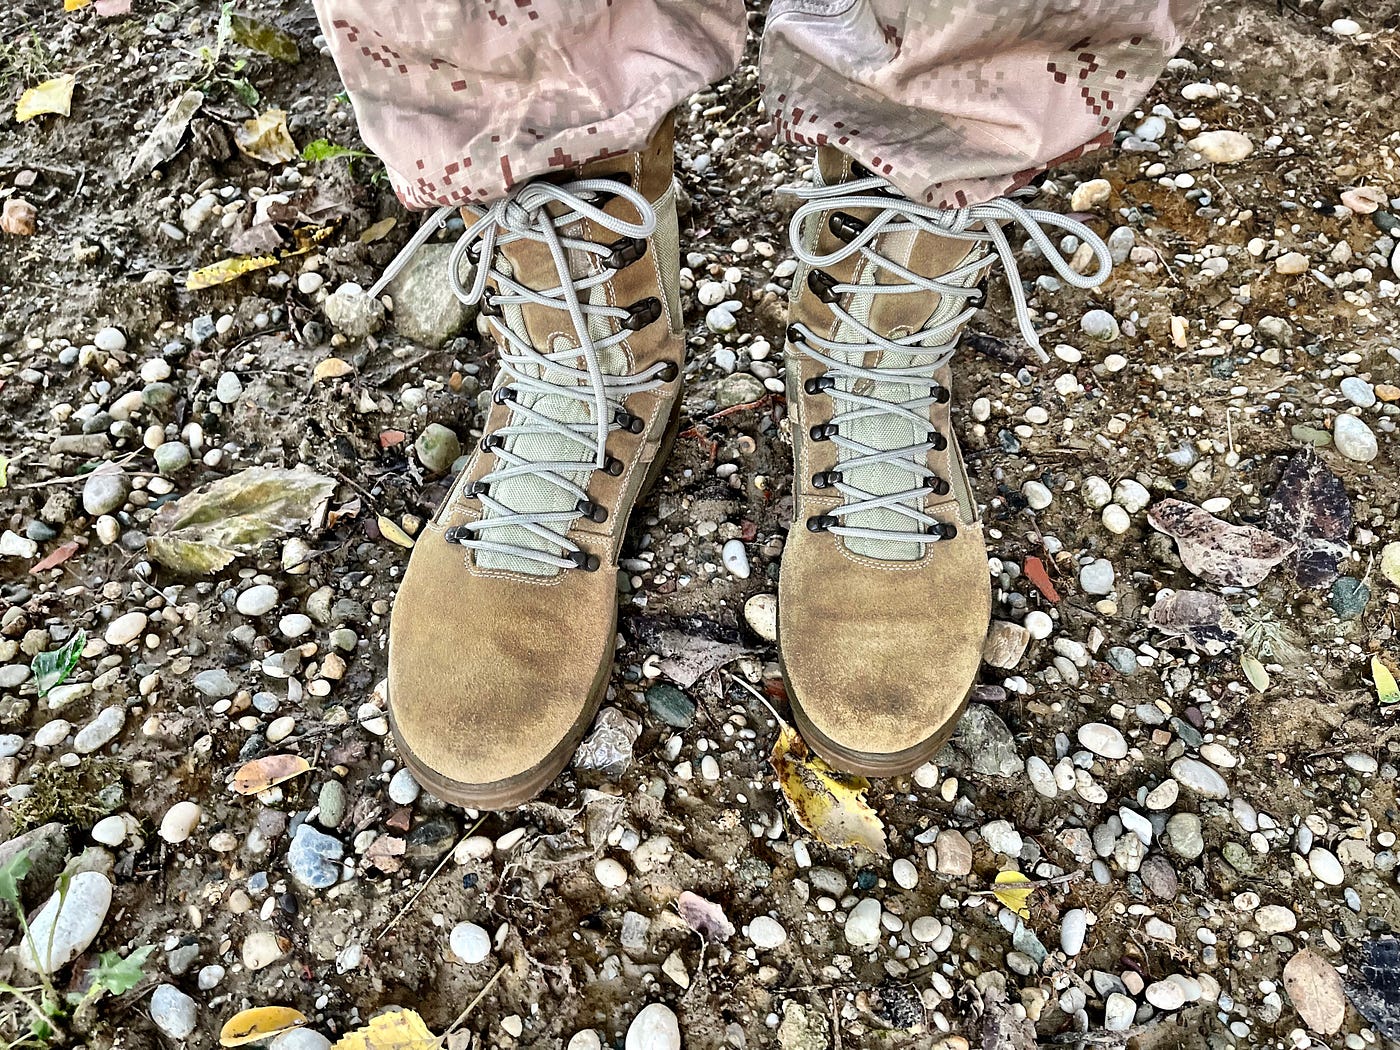 INKOP Ares pustinjske čizme. Vojne čizme za misije u pustinjskom… | by Matt  Marenic | Blog: mattmarenic.com